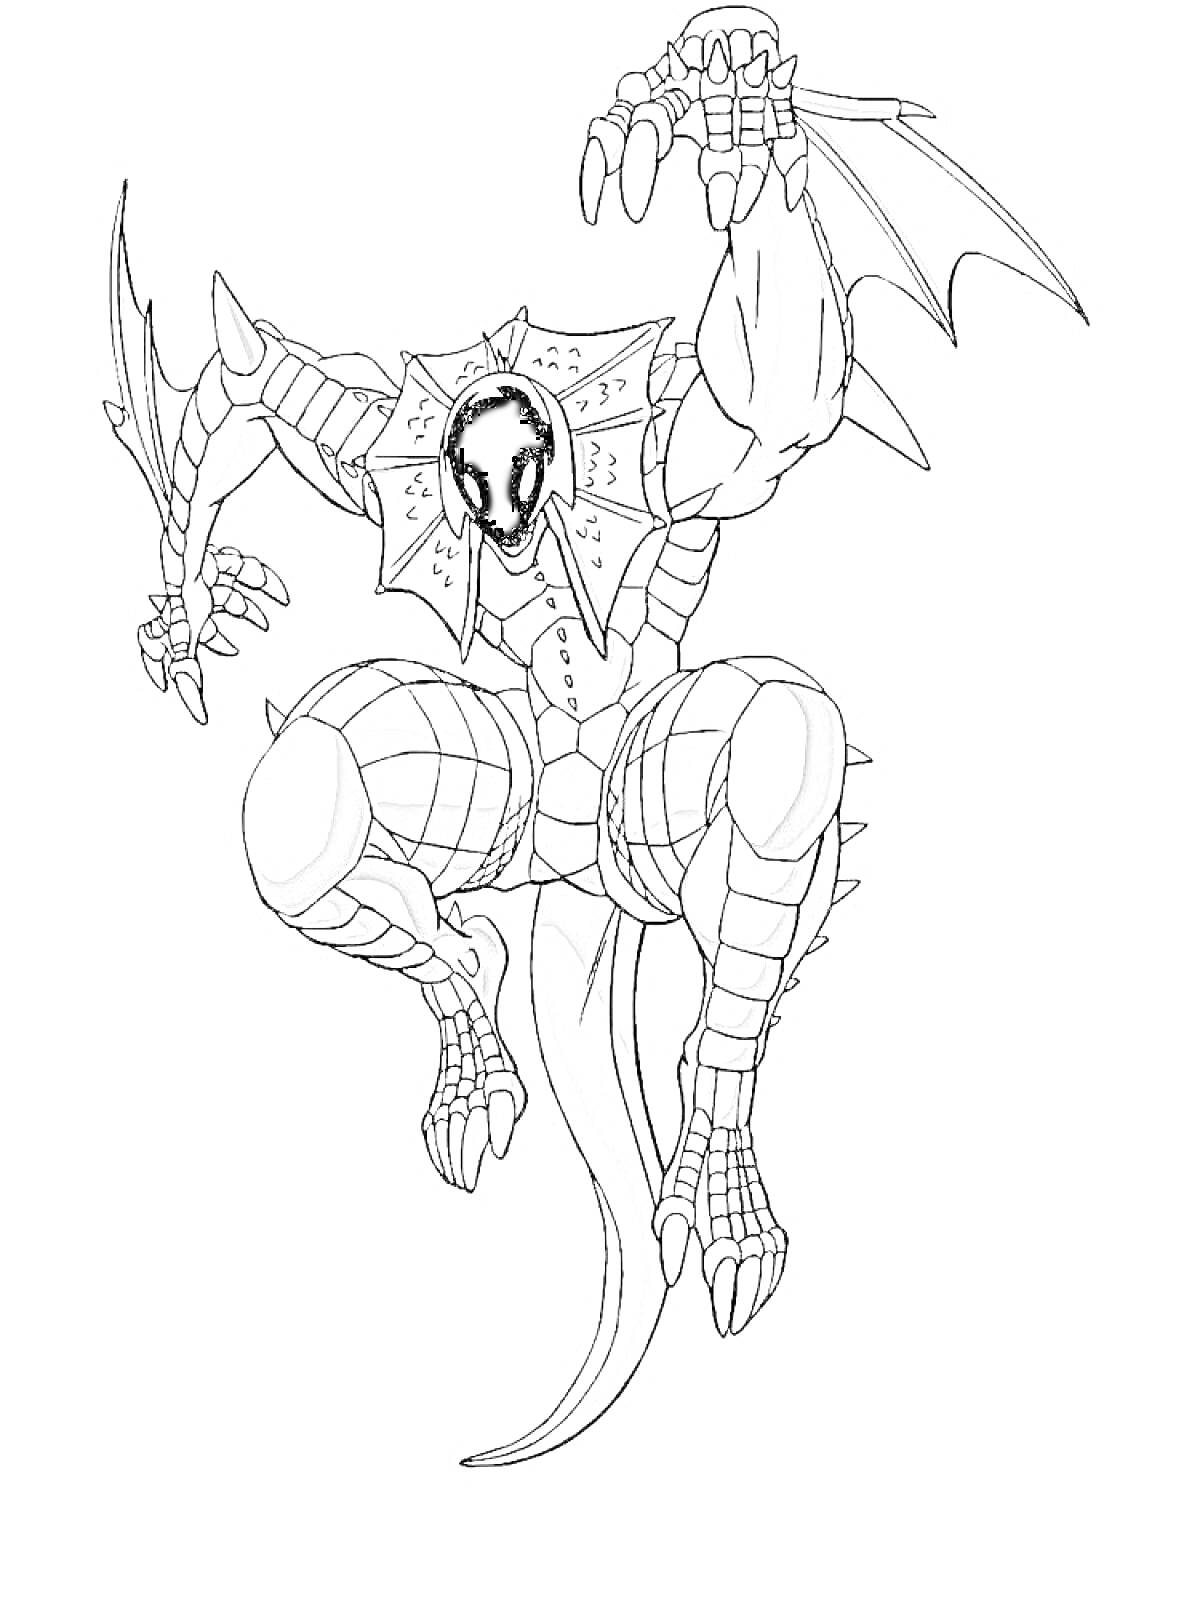 Раскраска Бакуган с драконьем хвостом и крыльями, бронированное тело с шипами, один коготь в поднятой руке, когтистые ноги, черное лицо в маске